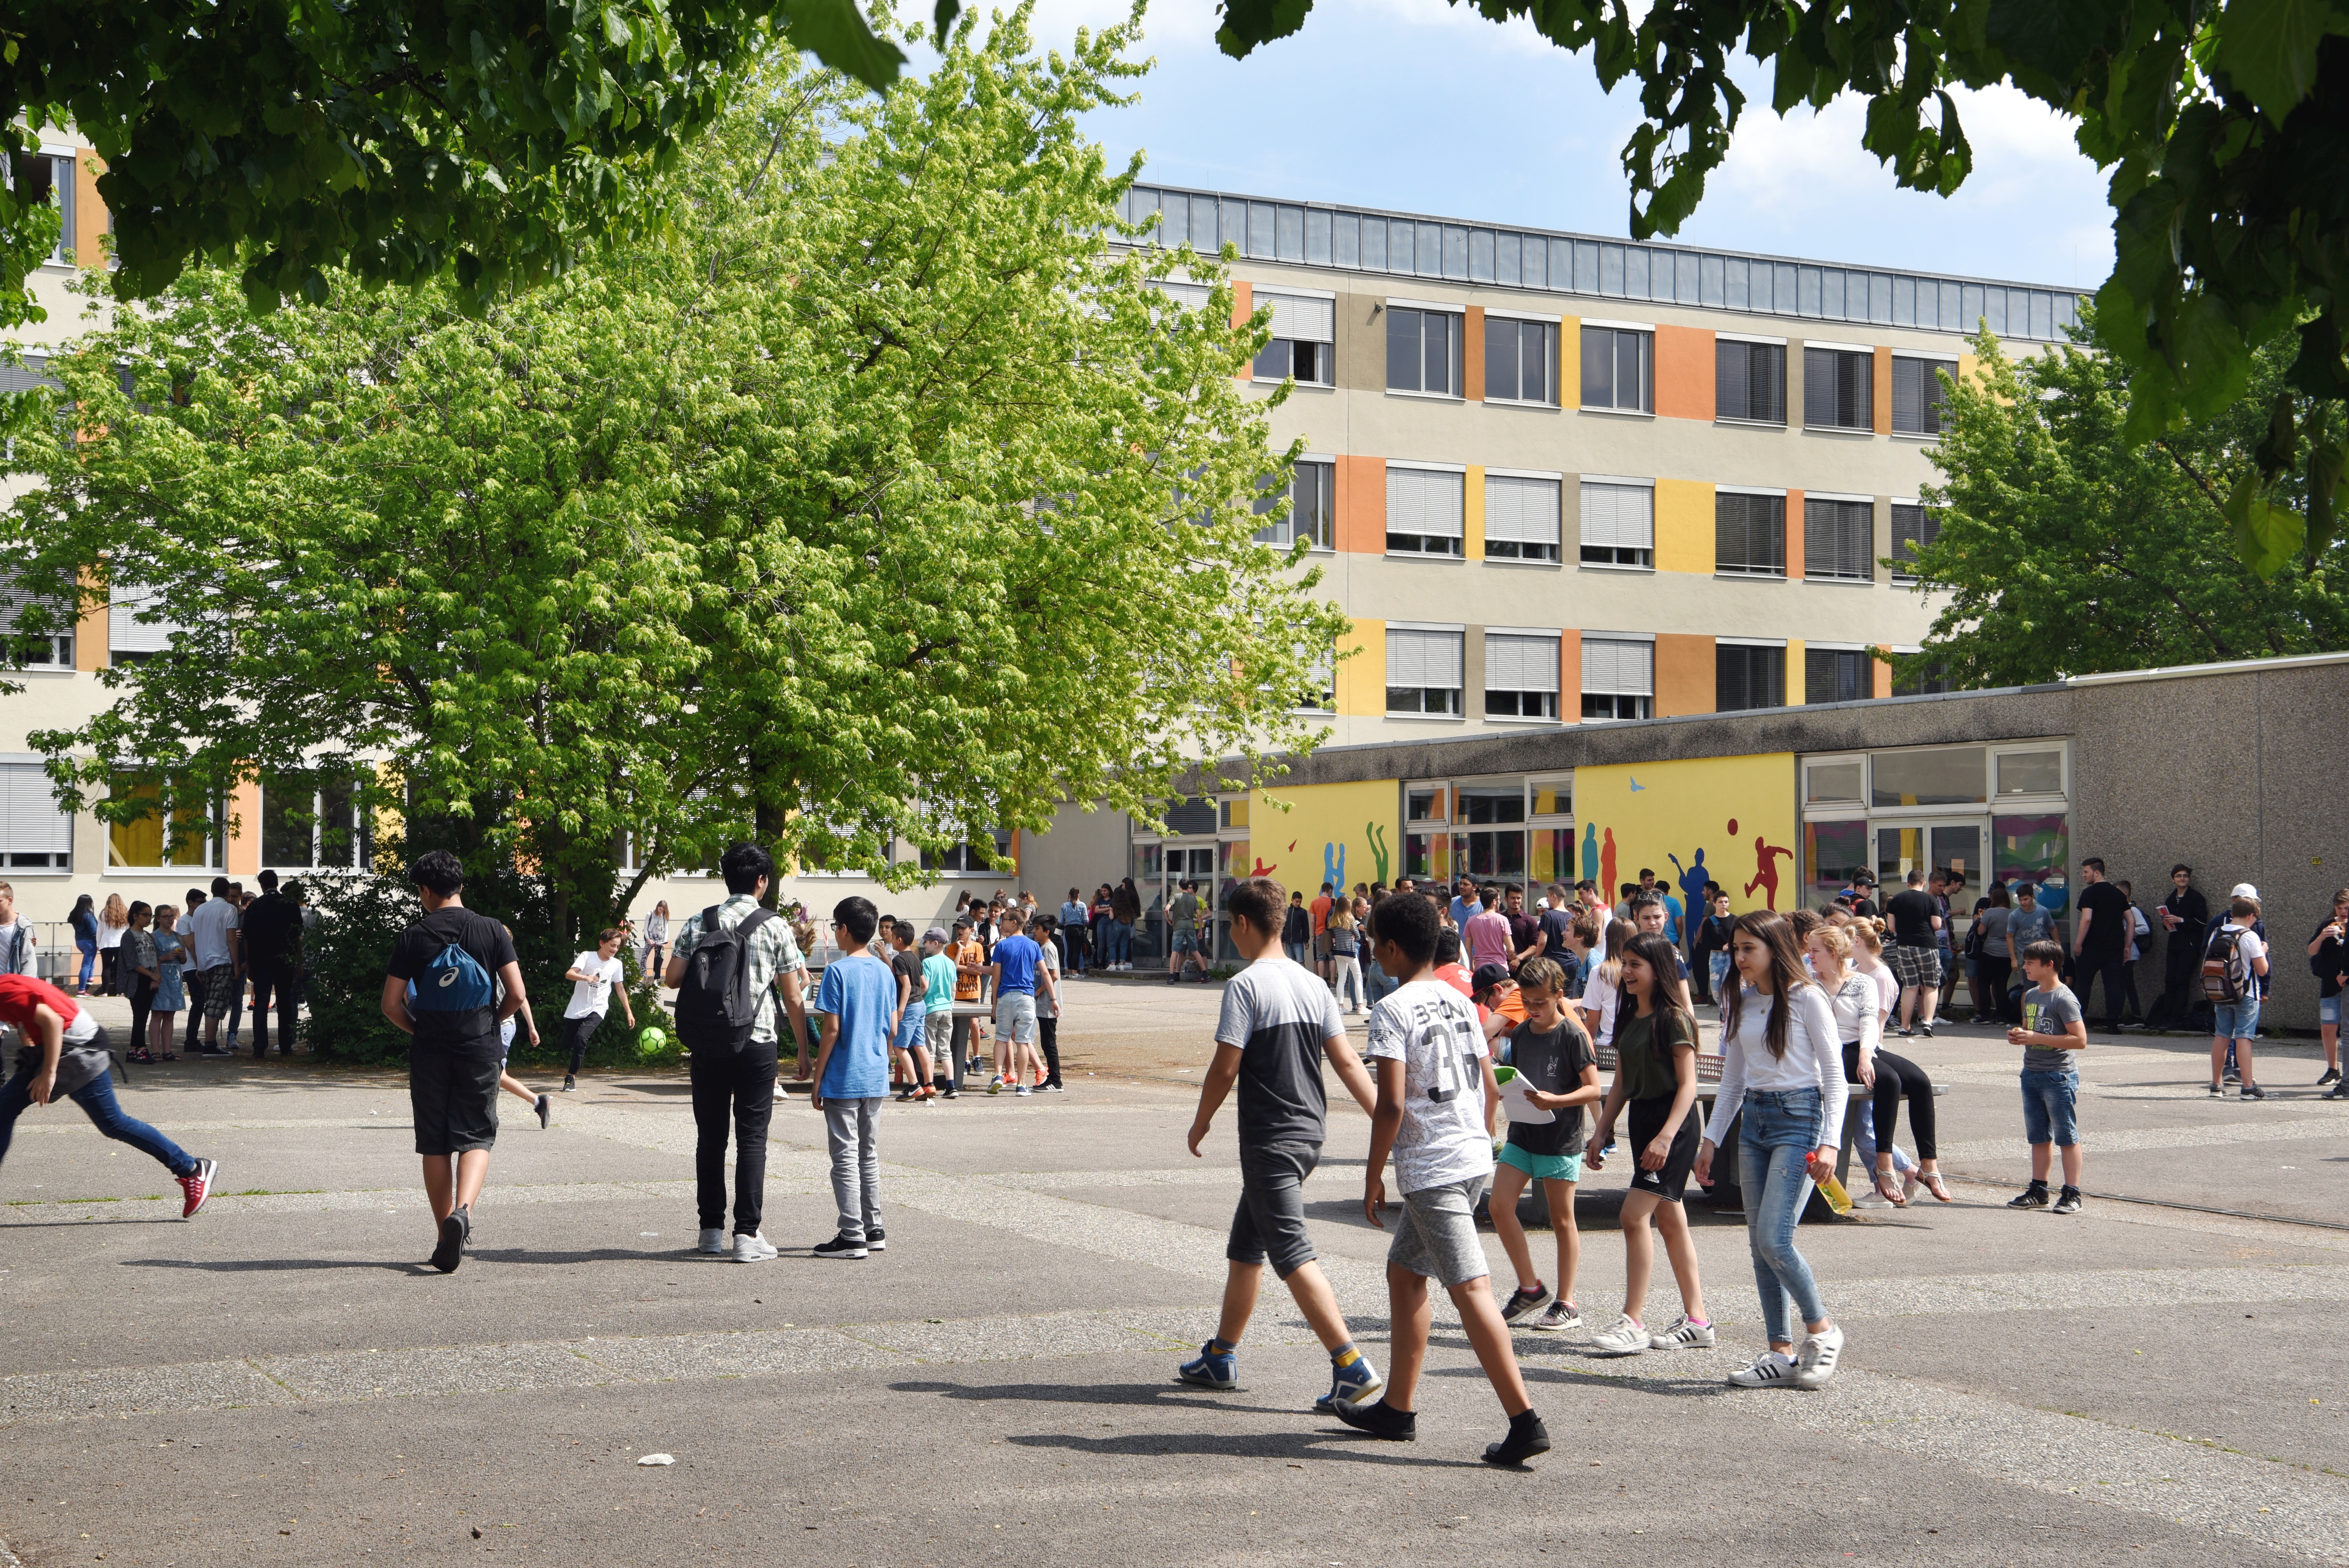 Auf dem Pausenhof der Heinrich-von-Buz-Realschule halten sich zahlreiche Schülerinnen und Schüler auf.